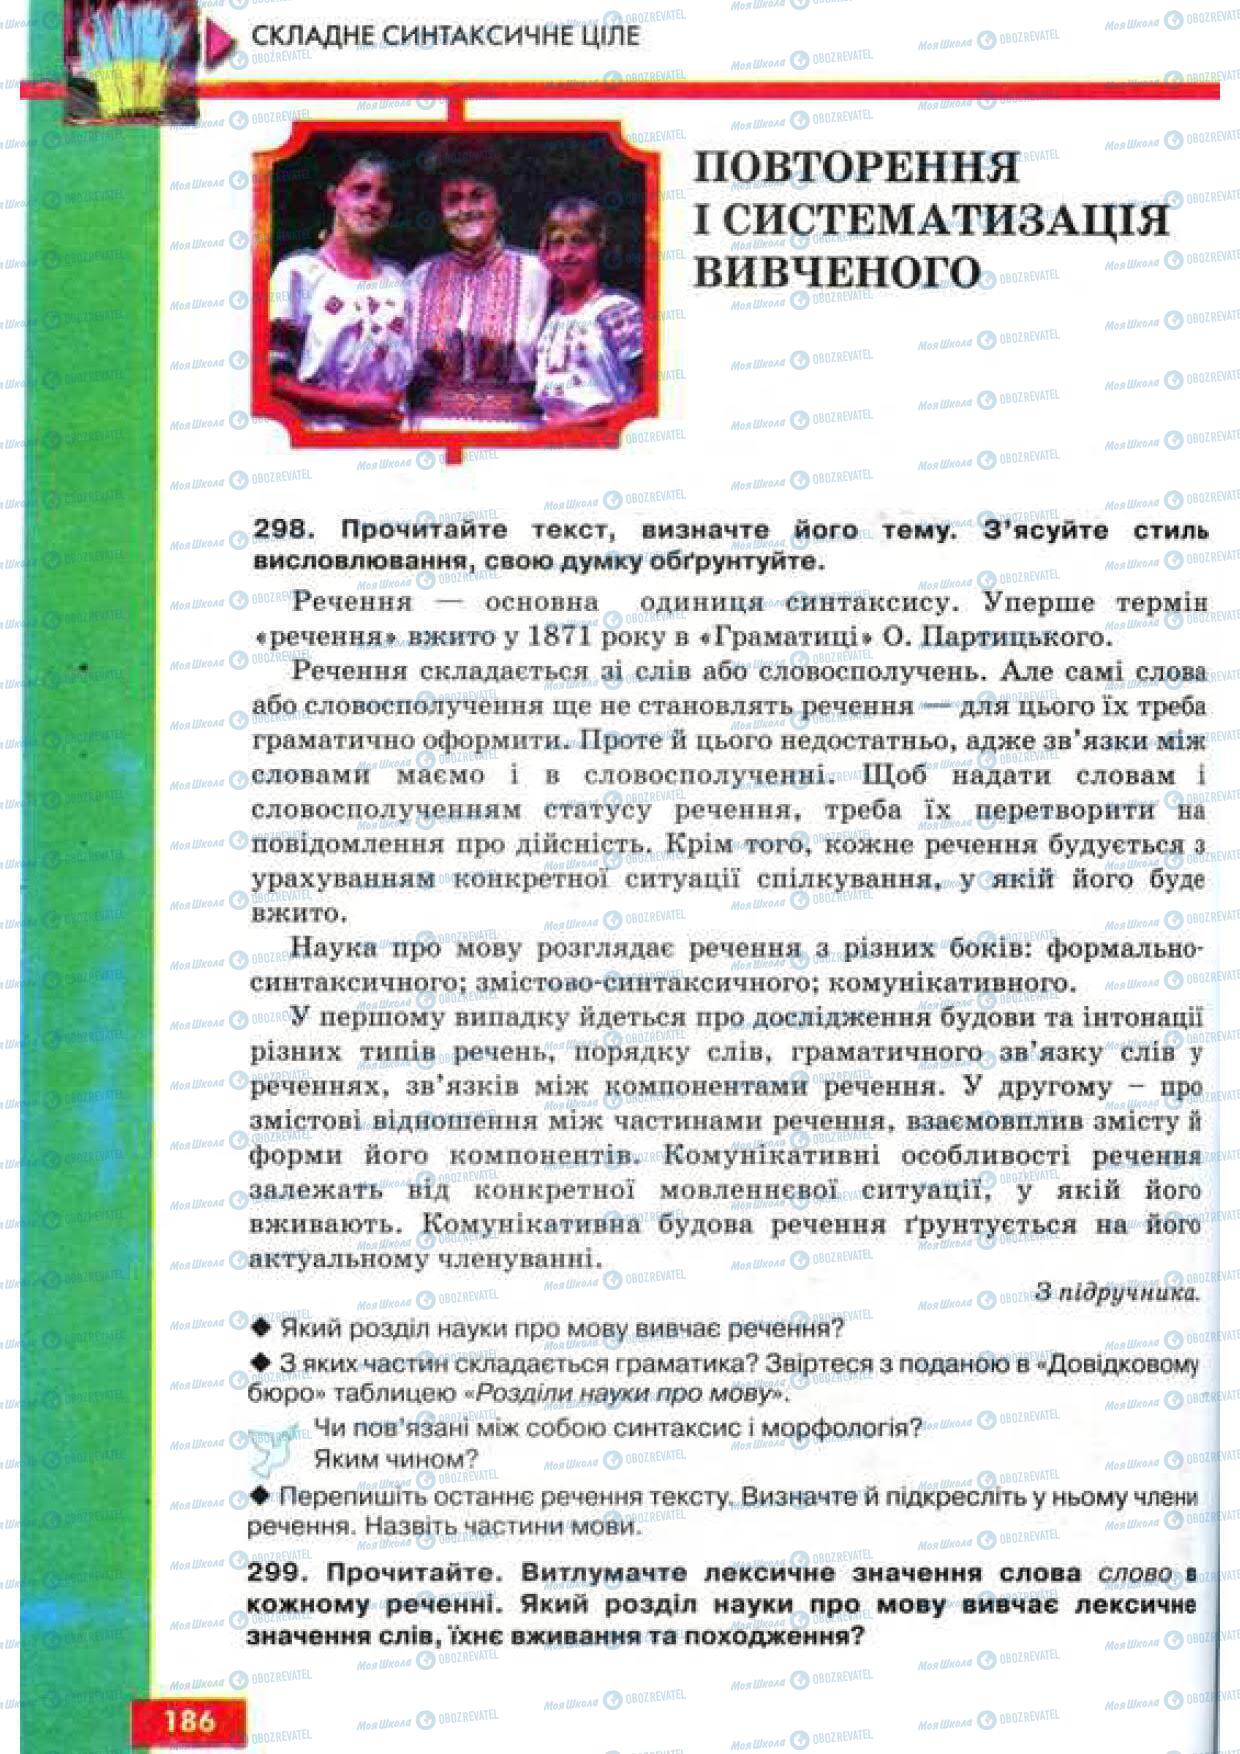 Підручники Українська мова 9 клас сторінка 186